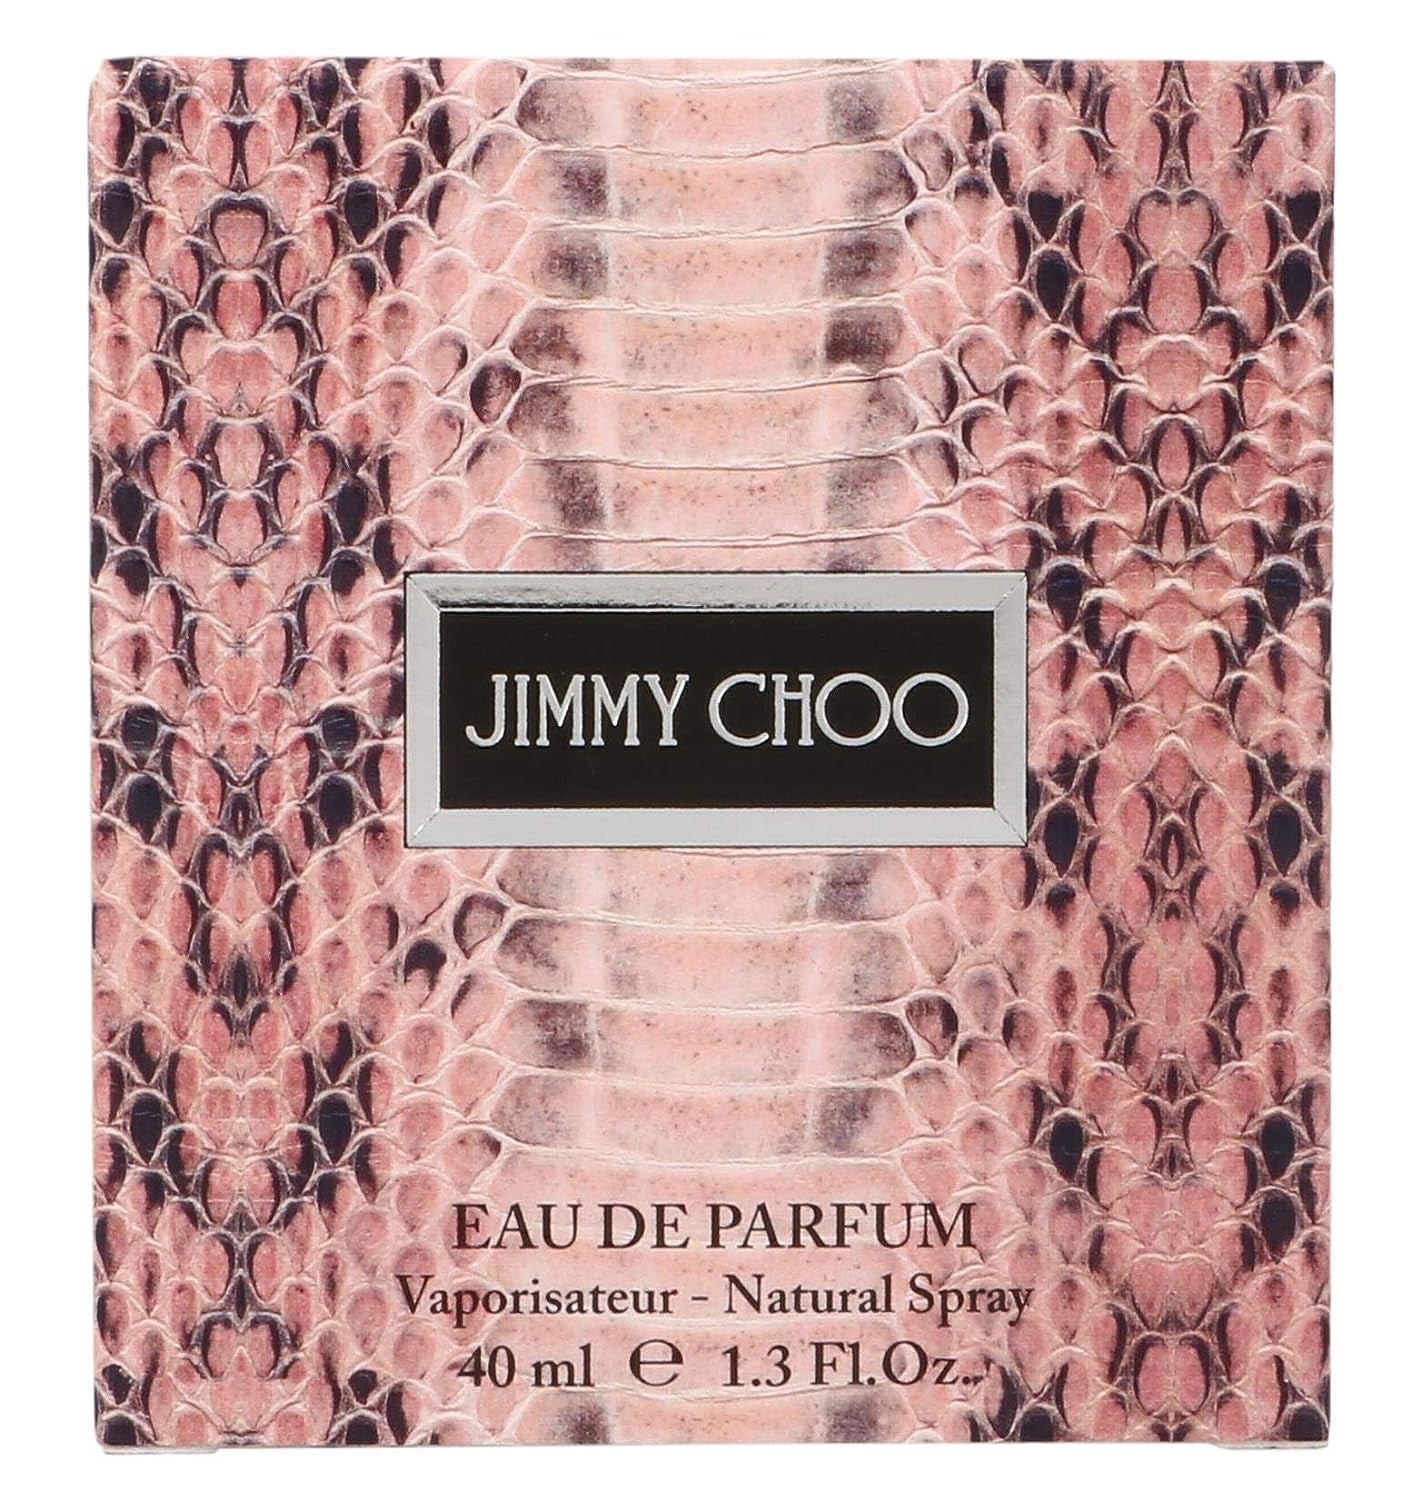 Jimmy Choo Eau De Parfum 1.3oz Spray